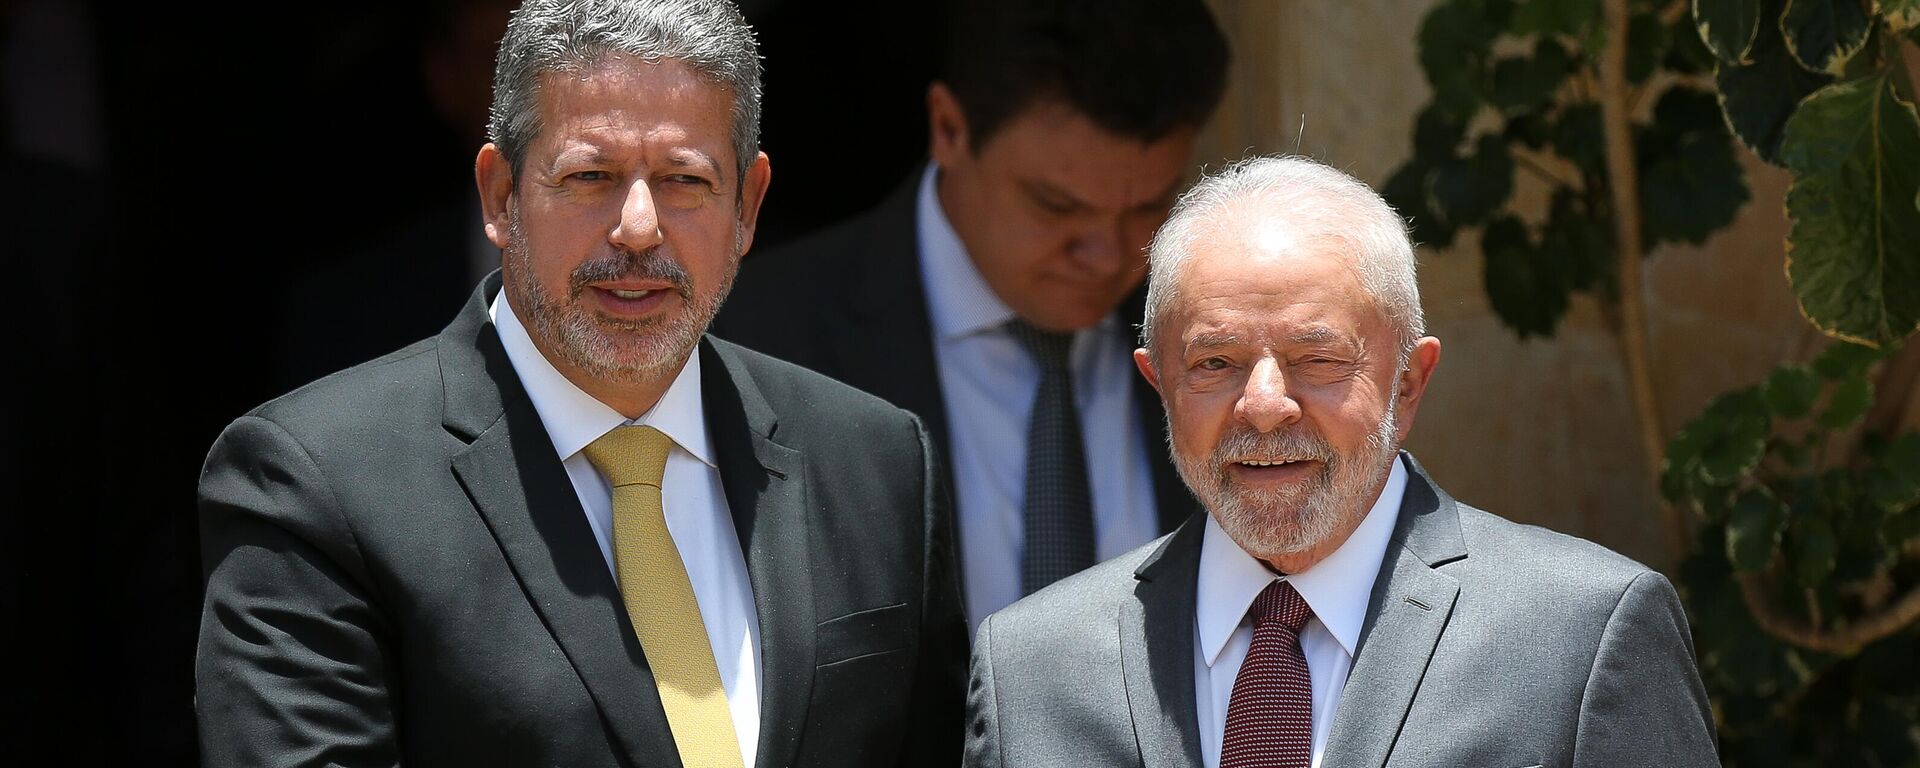 O presidente da Câmara dos Deputados, Arthur Lira (PP-AL, à esquerda), conversa com o presidente eleito, Luiz Inácio Lula da Silva (PT), após almoço em Brasília, em 9 de novembro de 2022 - Sputnik Brasil, 1920, 05.12.2022